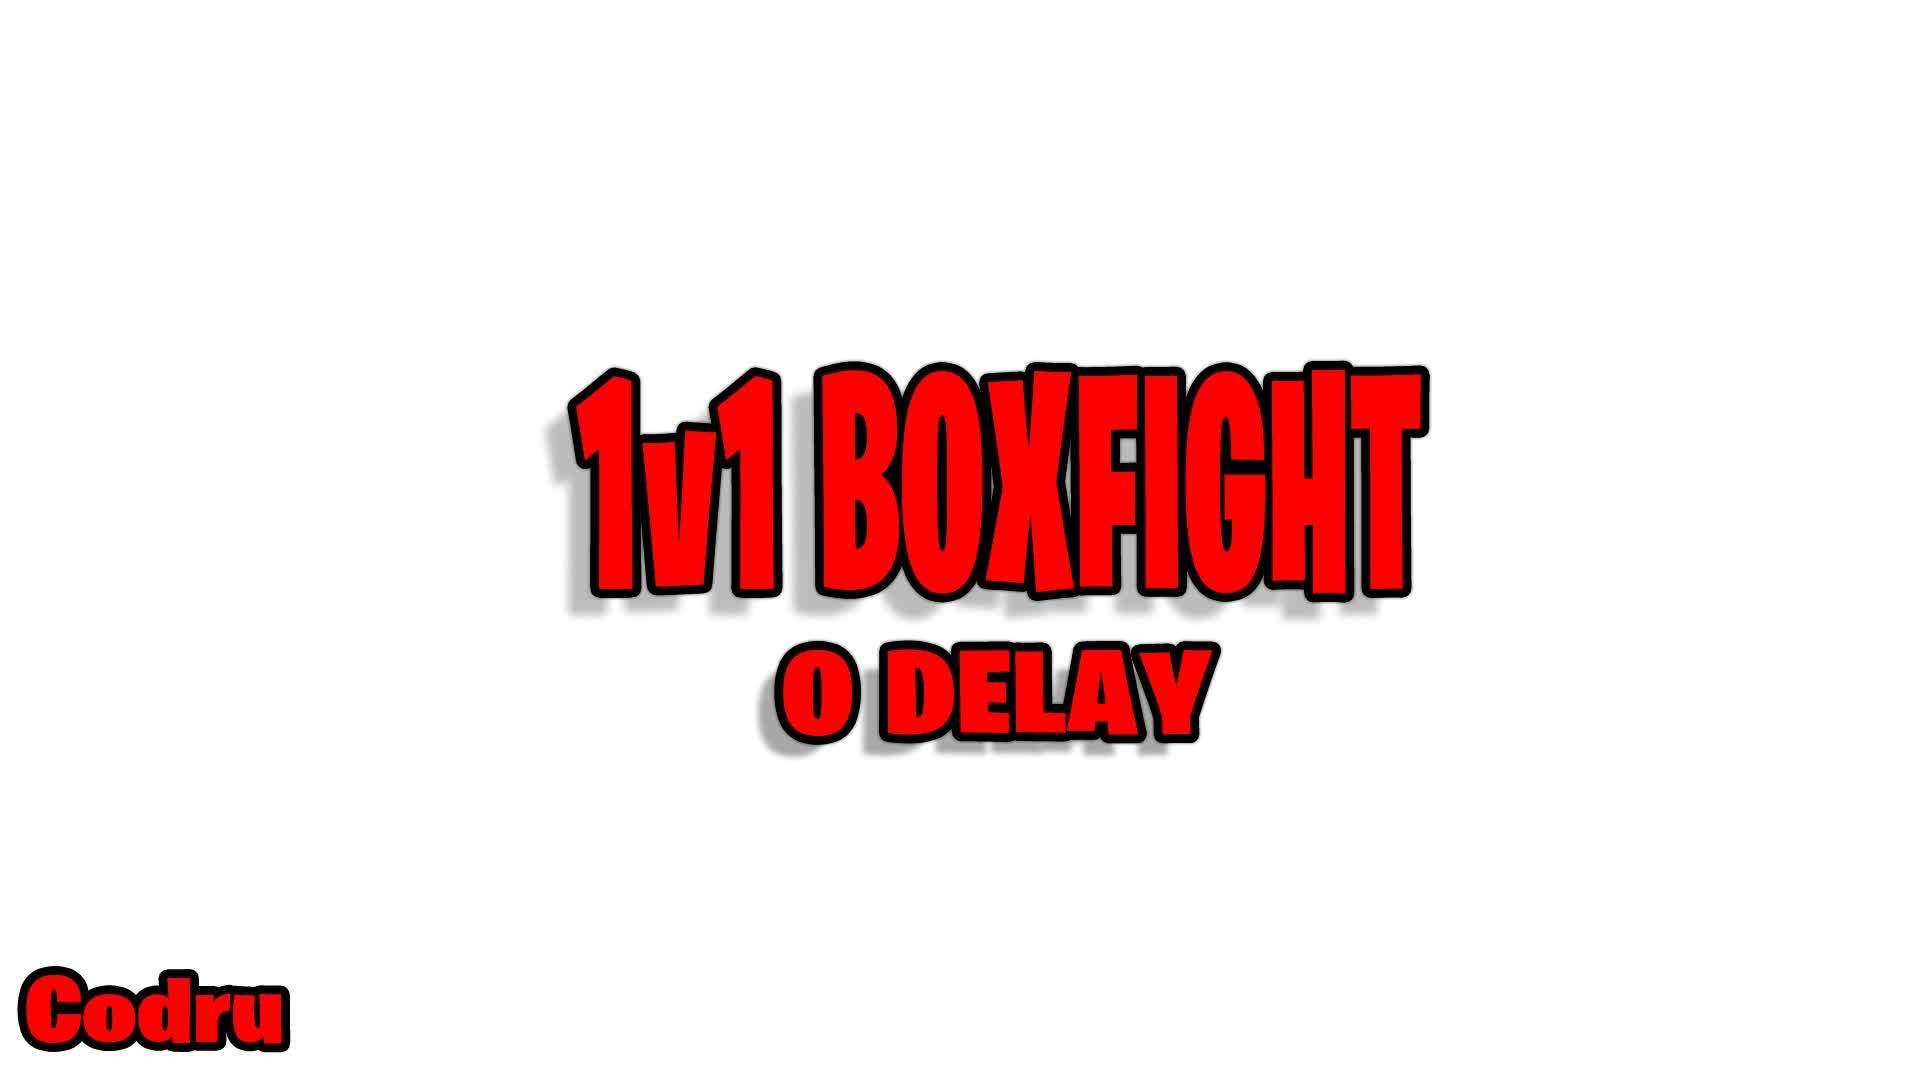 1v1 Boxfight 0 delay